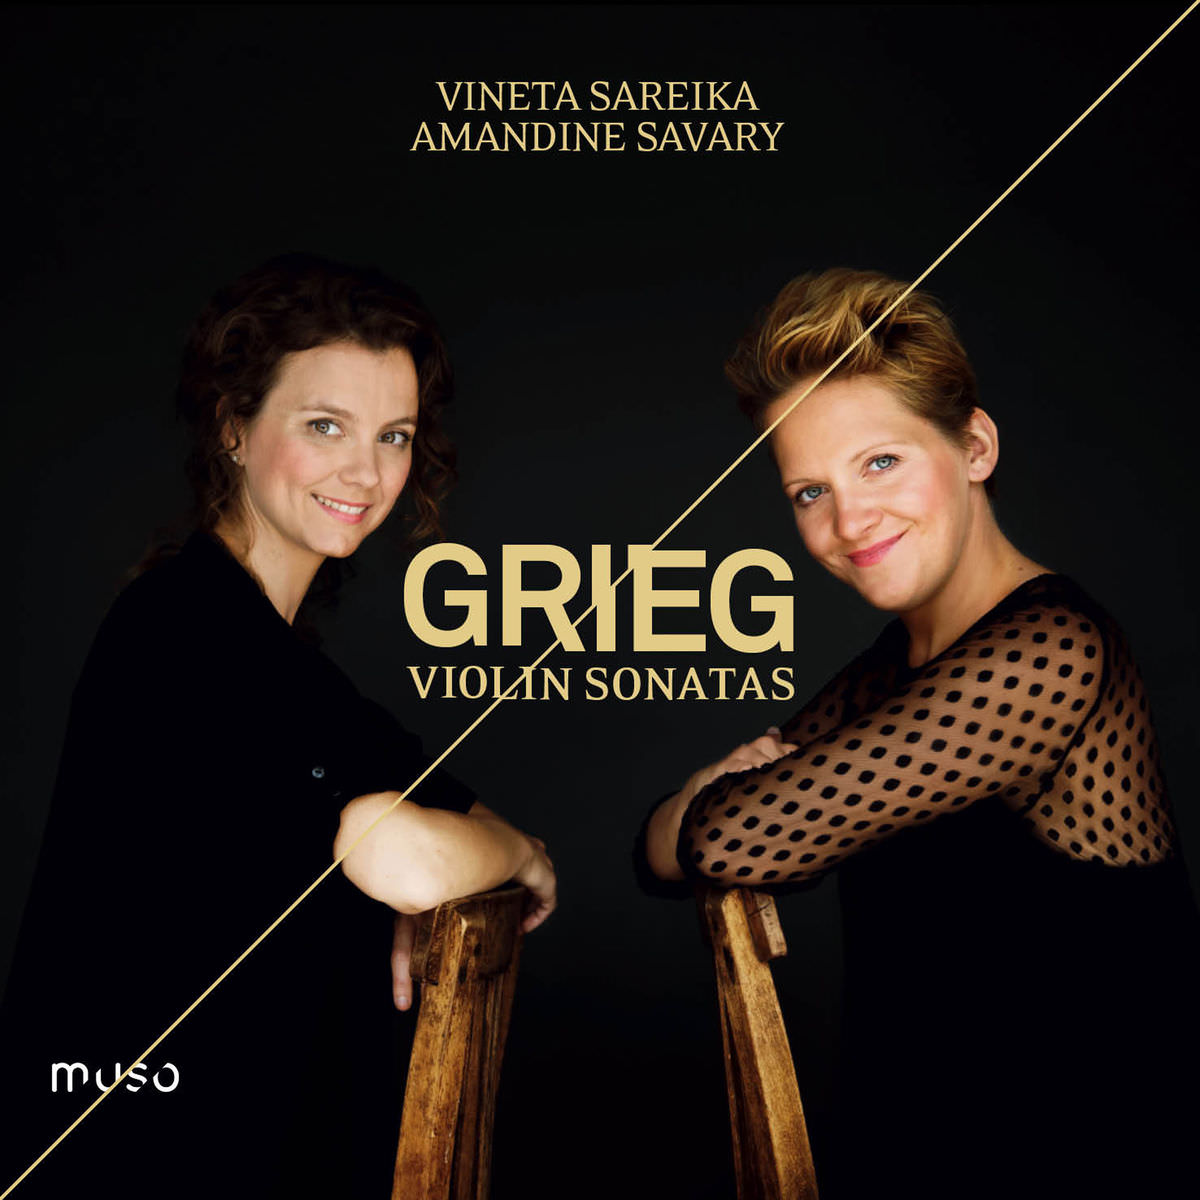 Vineta Sareika & Amandine Savary - Edvard Grieg: Violin Sonatas (2018) [FLAC 24bit/96kHz]